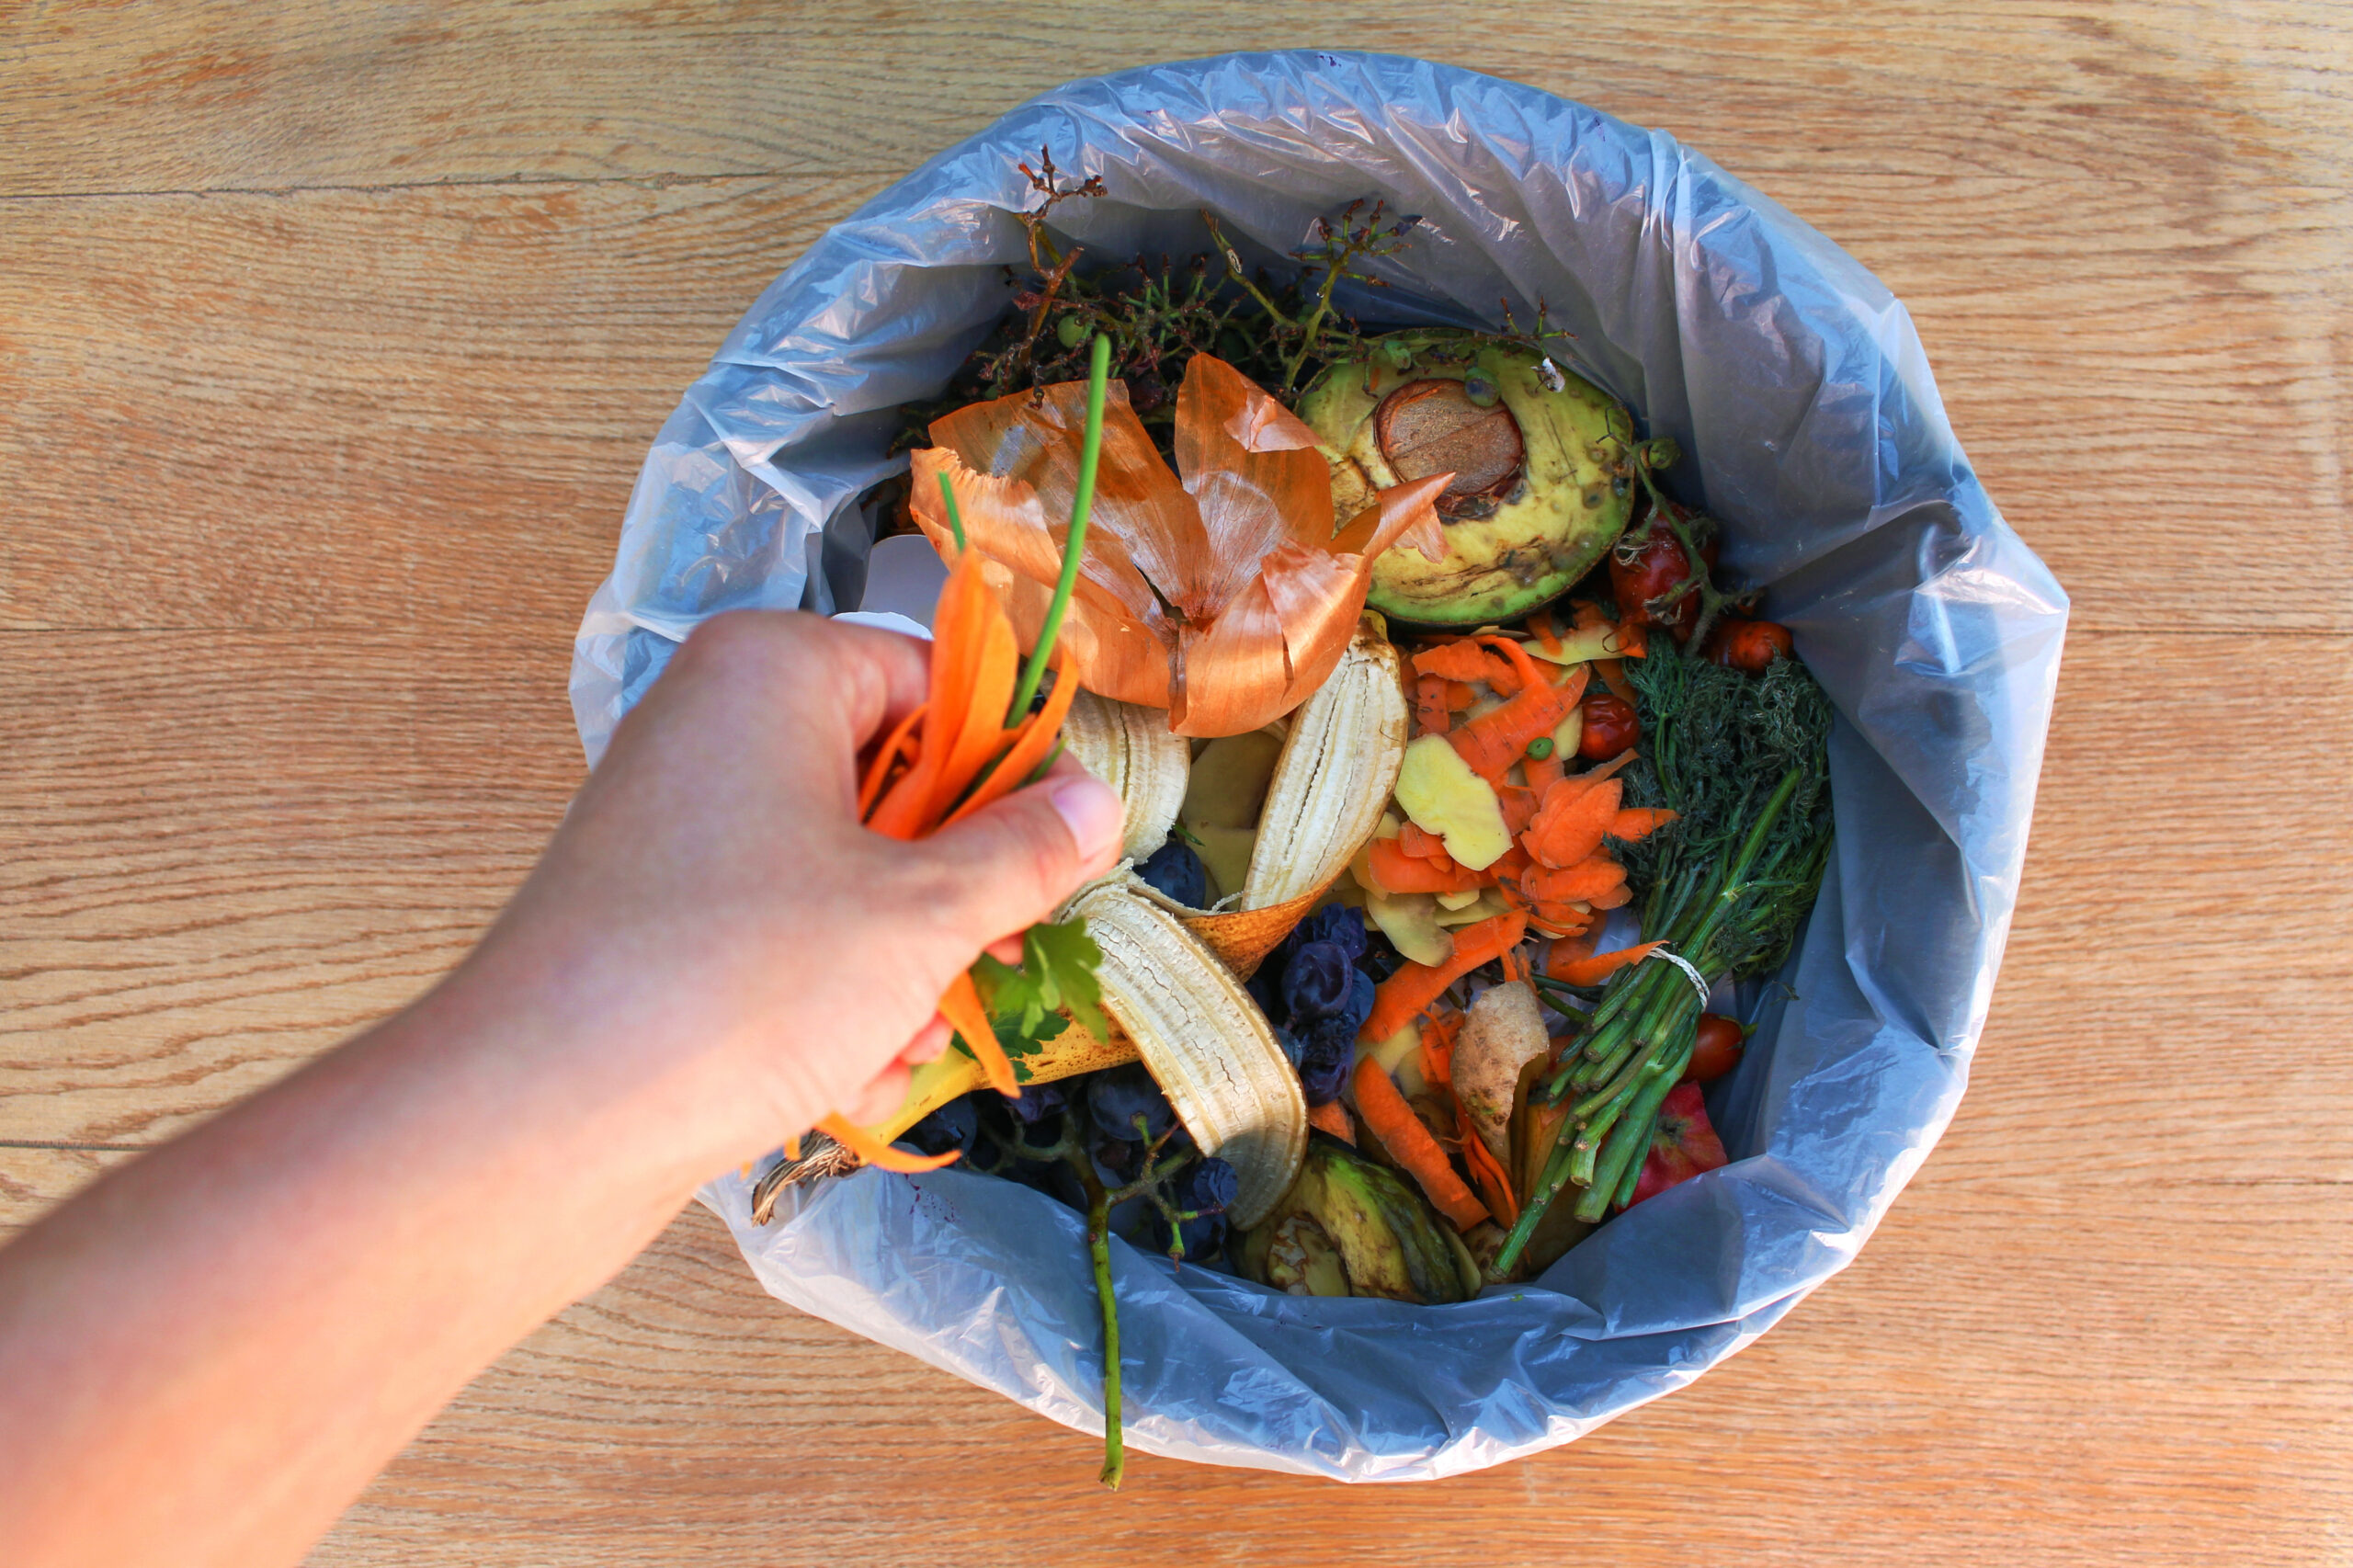 Una persona arroja los desechos de comida en un contenedor de compostaje.